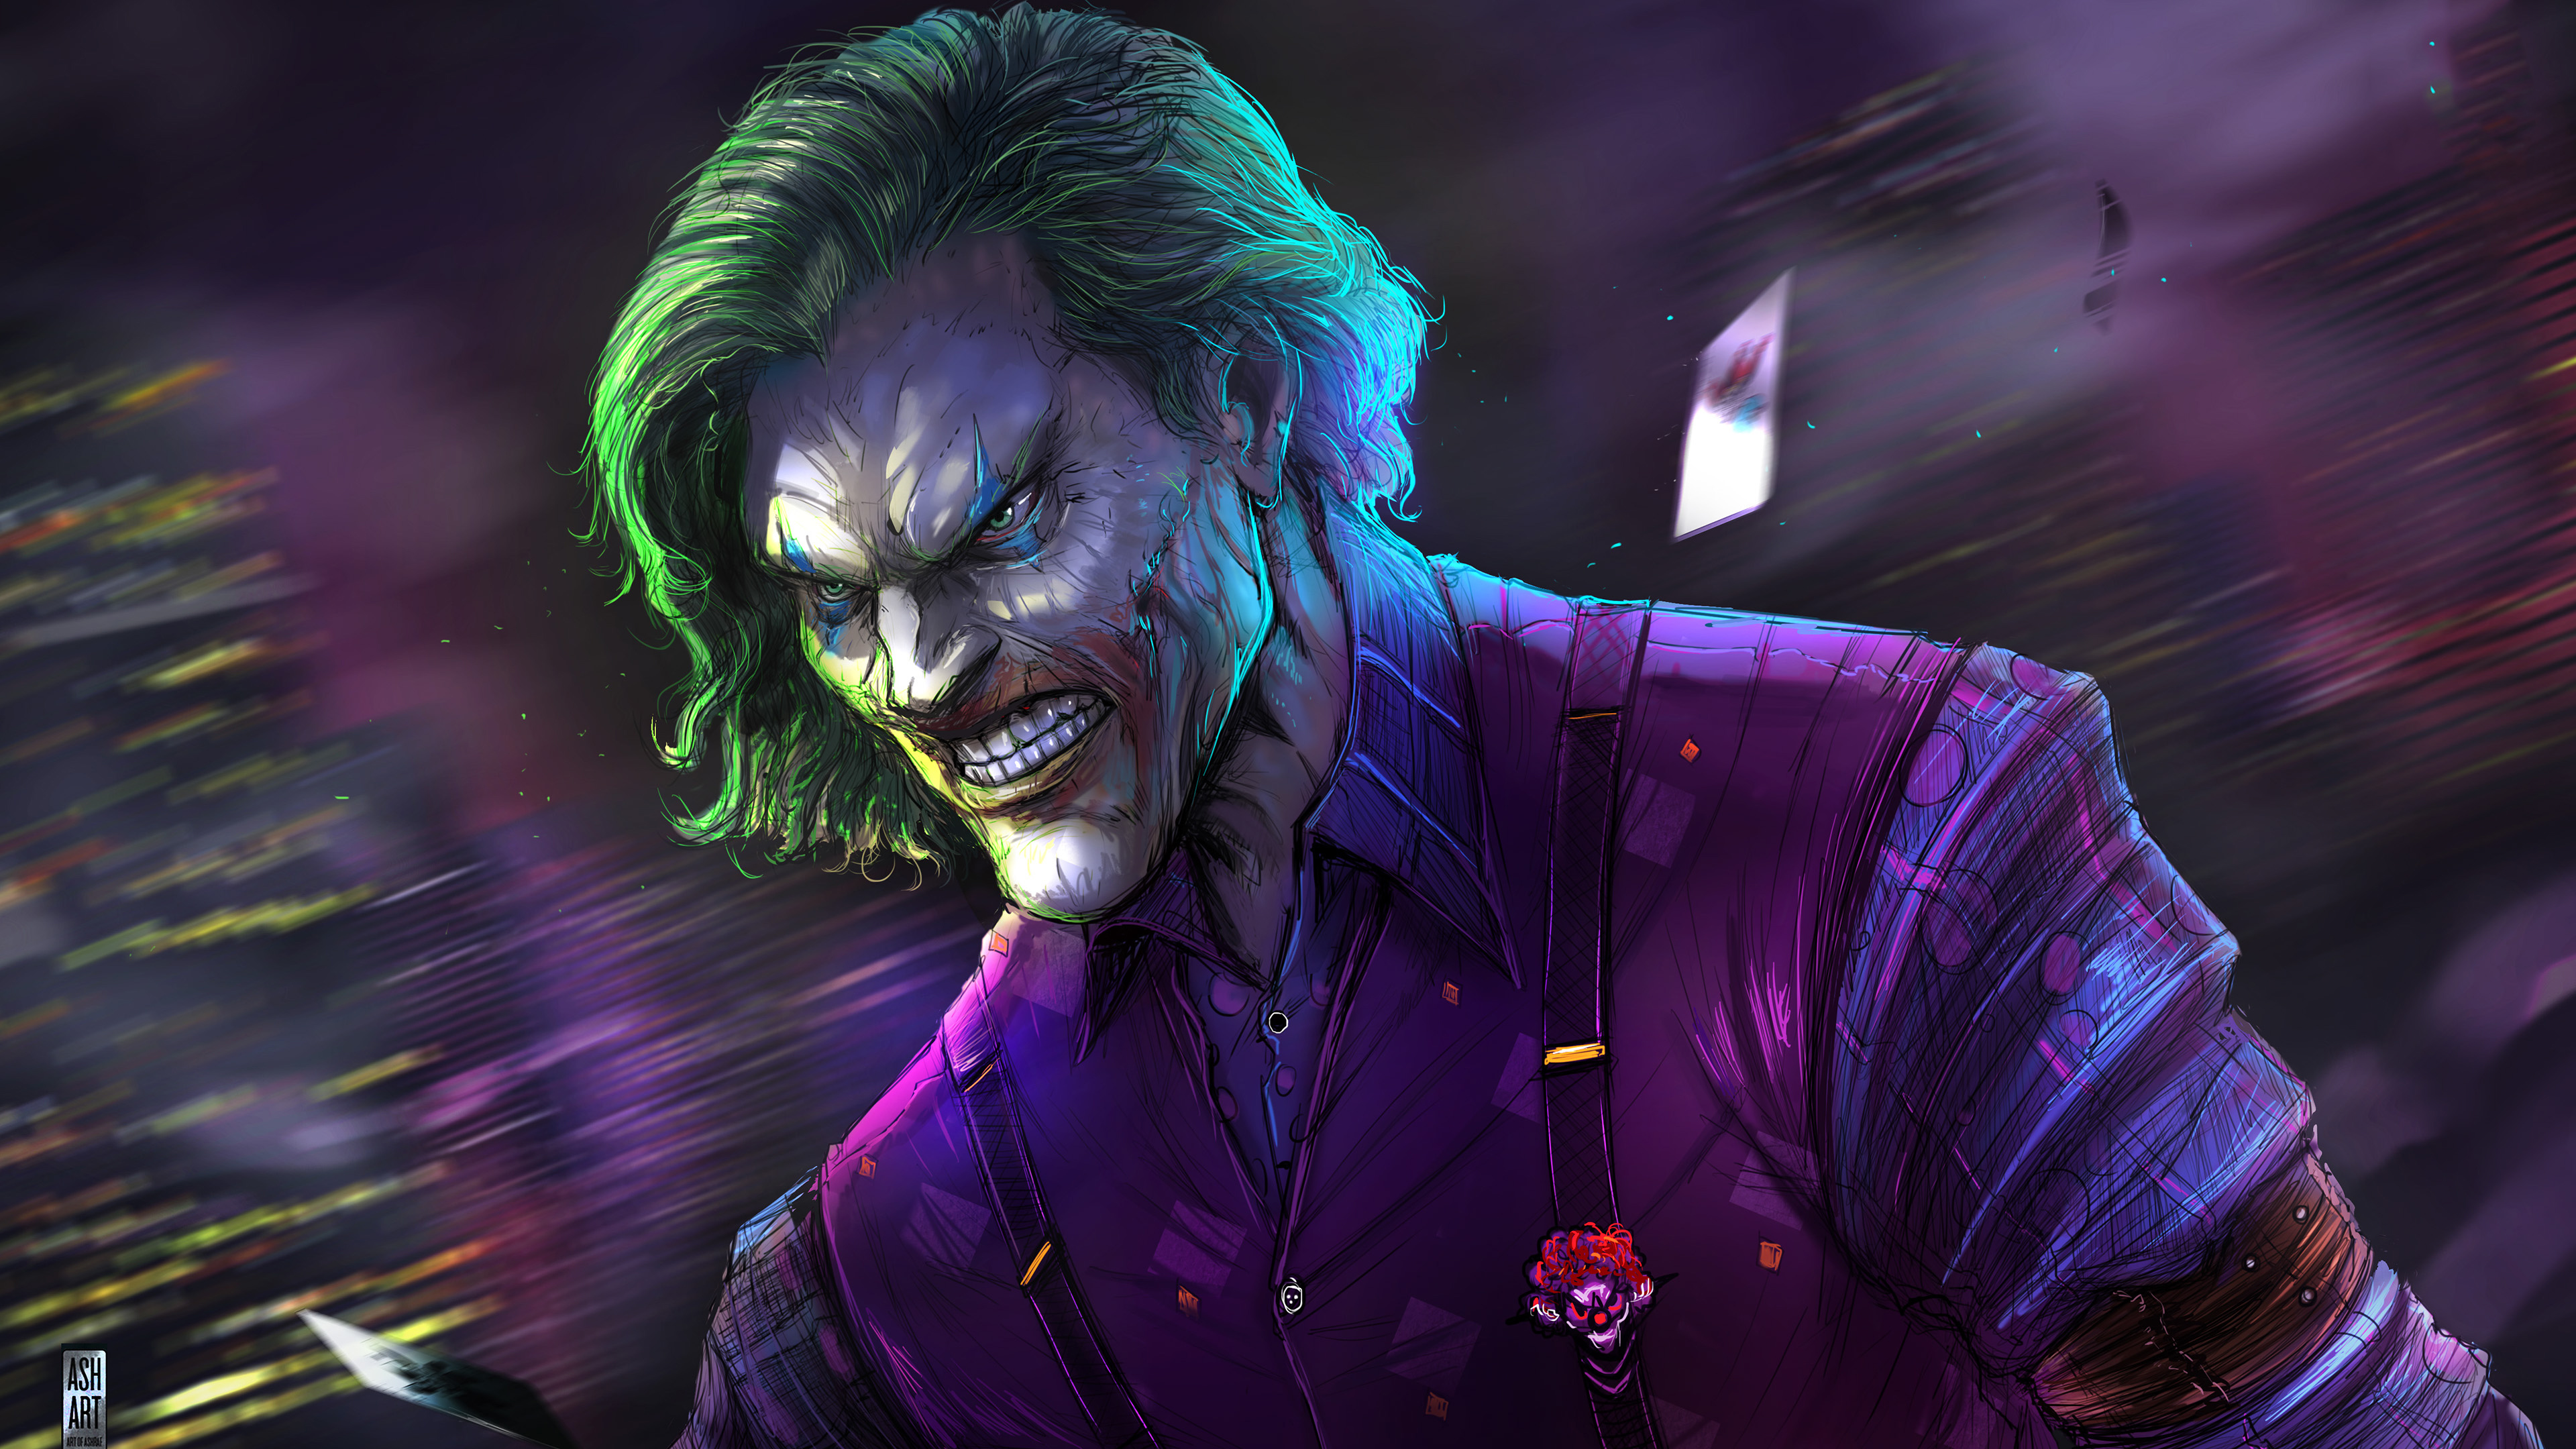 Joker Fanart Wallpaper 4k Ultra HD ID:4461